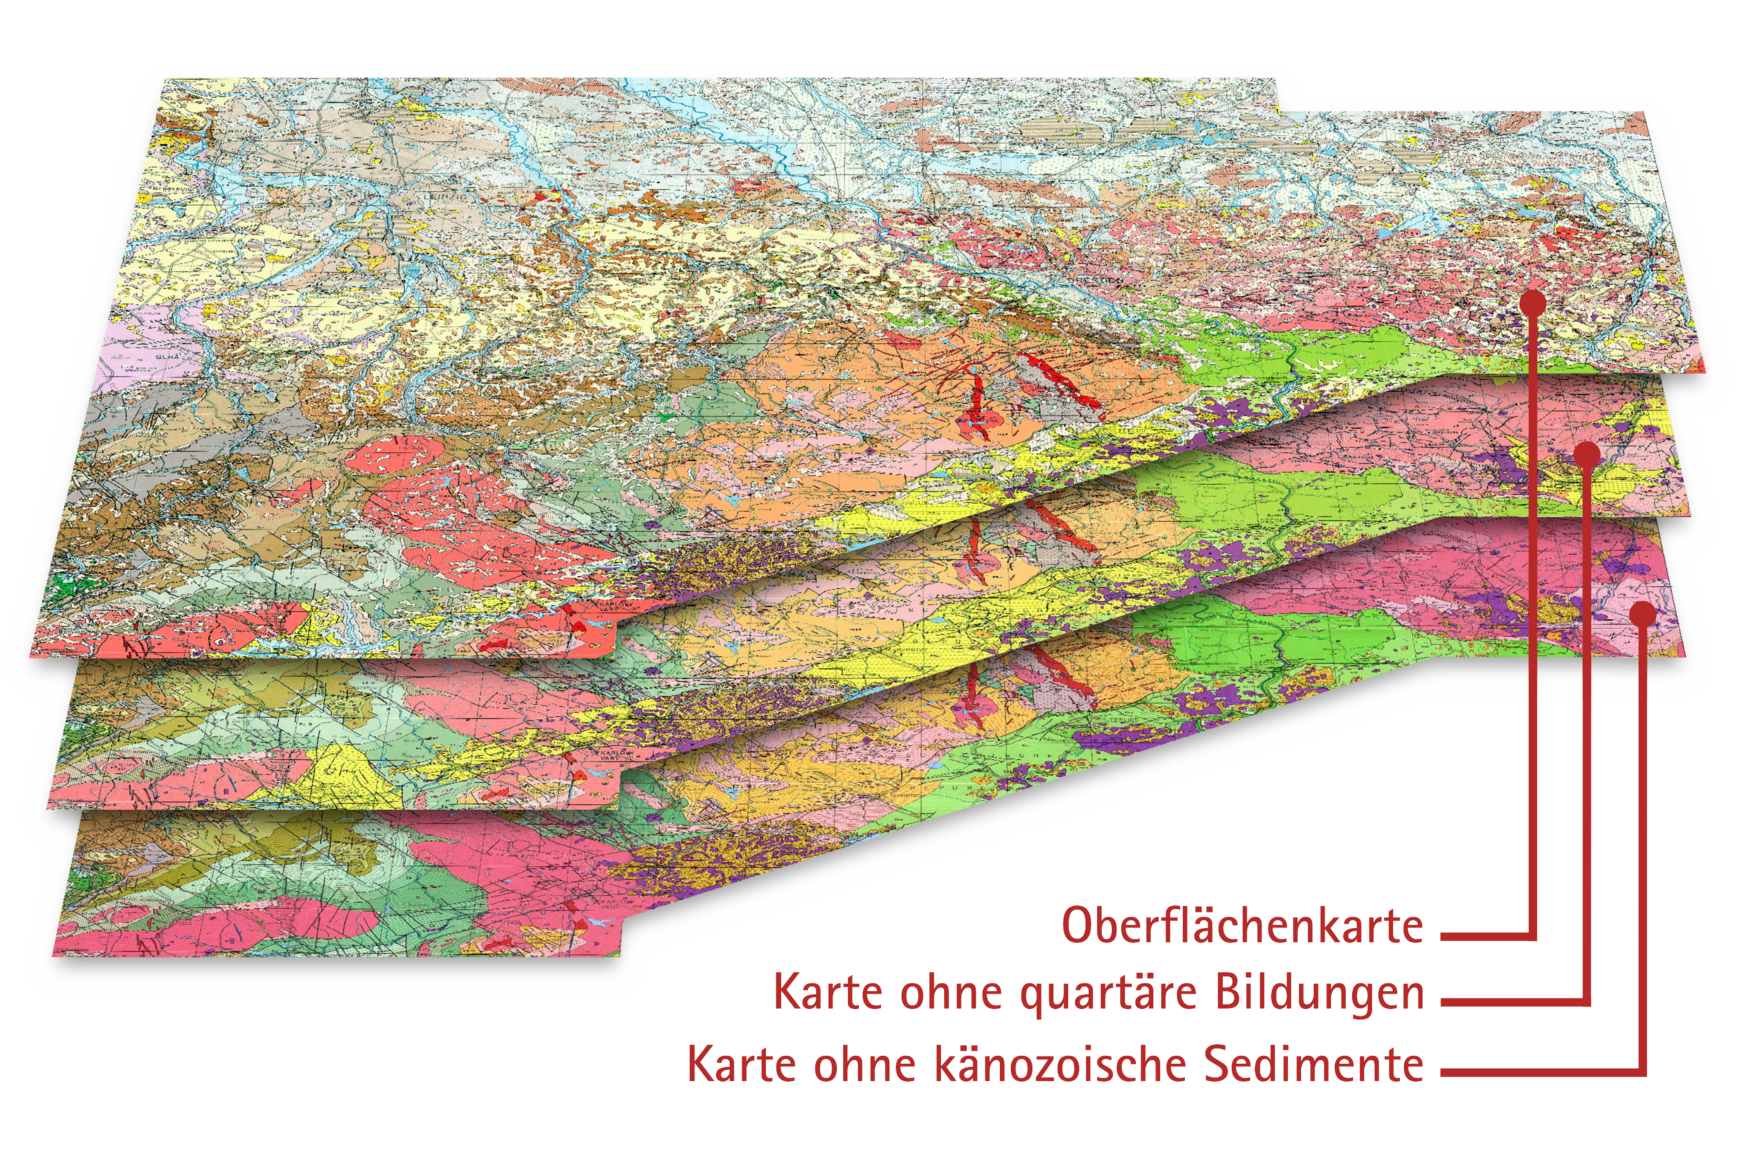 Das Bild zeigt die drei Ebenen der geologischen Übersichtskarte 1 : 400 000.